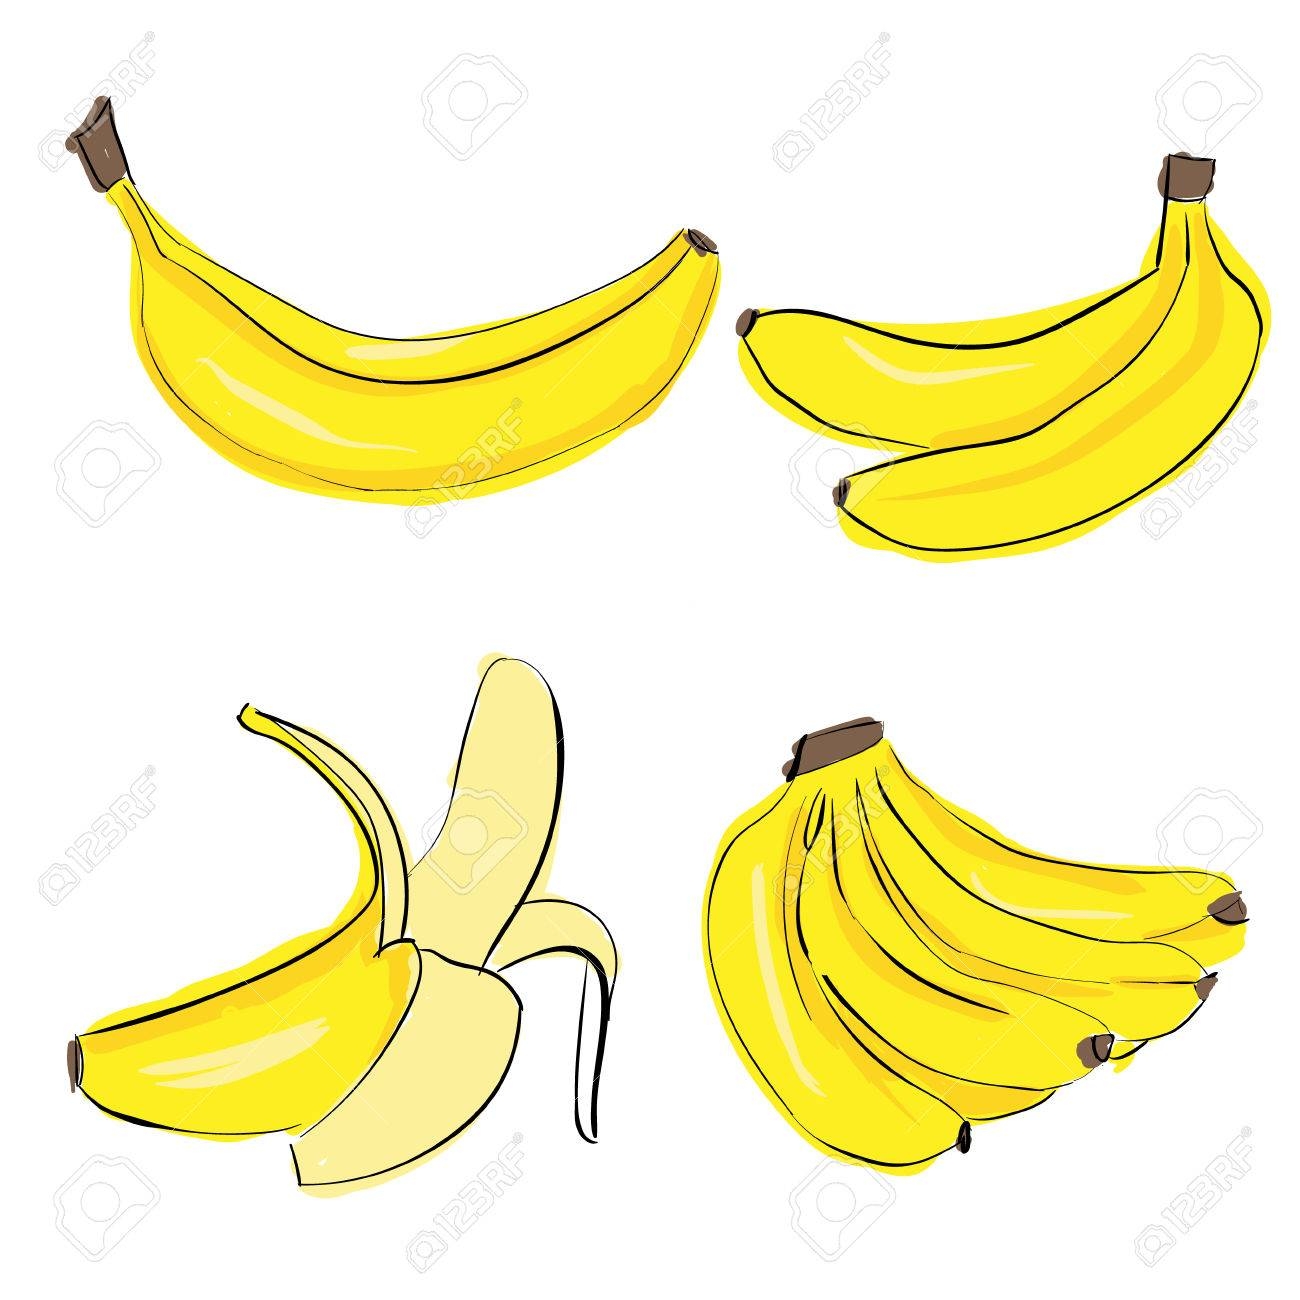 Связка бананов рисунок (41 фото)